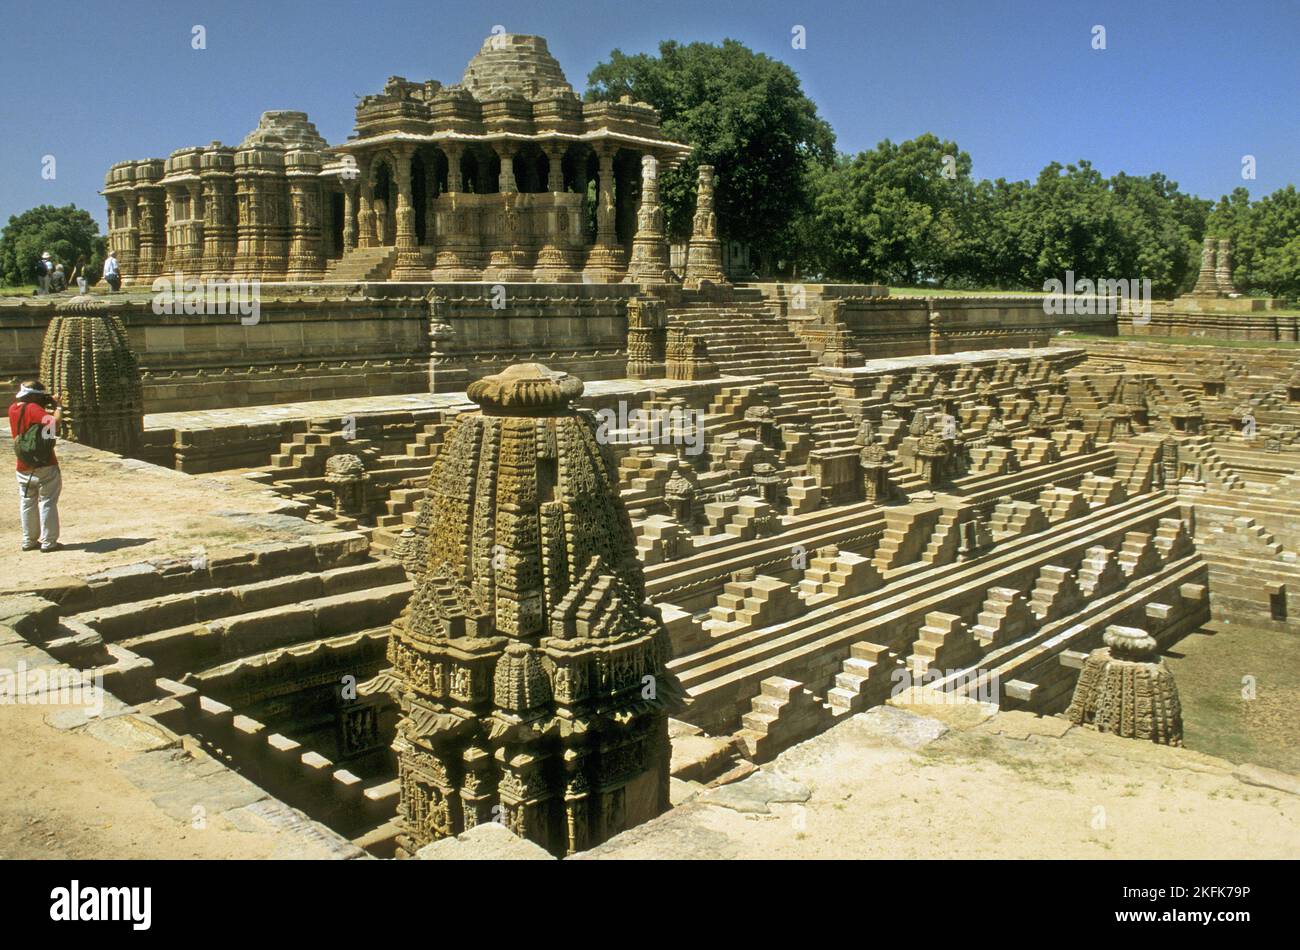 L'ancien temple du Soleil hindou de Modhéra est dédié à la divinité solaire Surya située dans le village de Modhéra dans le Gujarat, en Inde. Banque D'Images